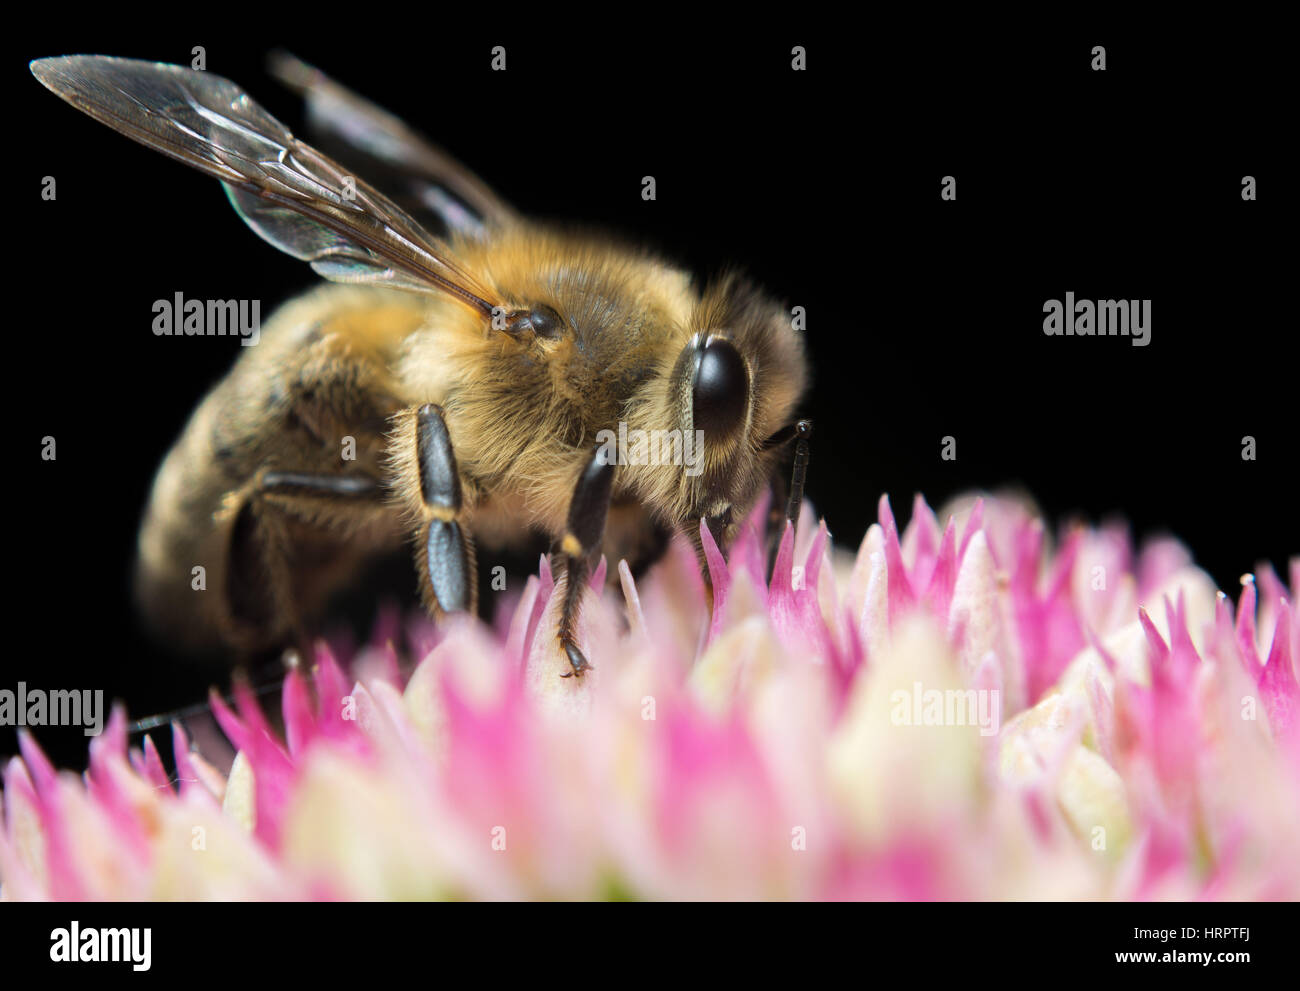 Vista laterale in prossimità di un ape sulla parte superiore dei fiori con sfondo nero Foto Stock